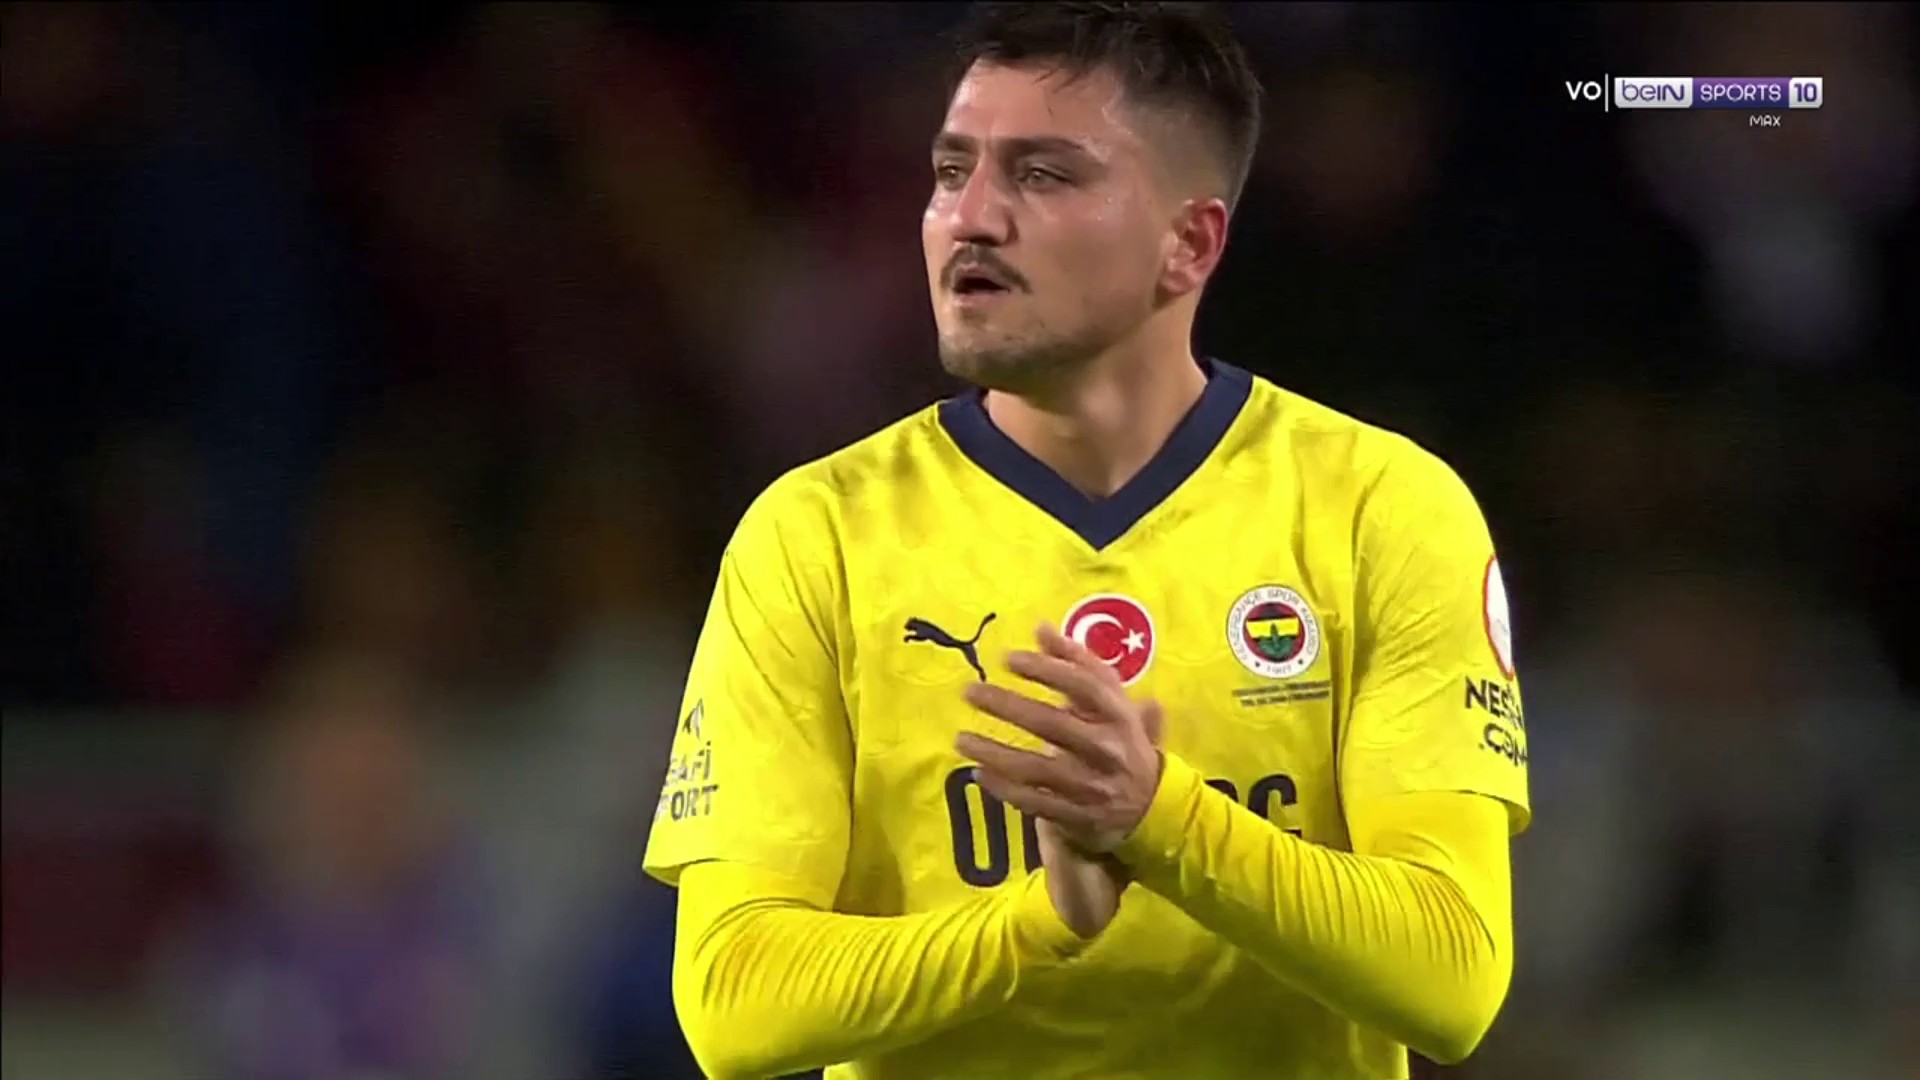 Süper Lig : Ünder et le Fener victorieux contre Hatayspor